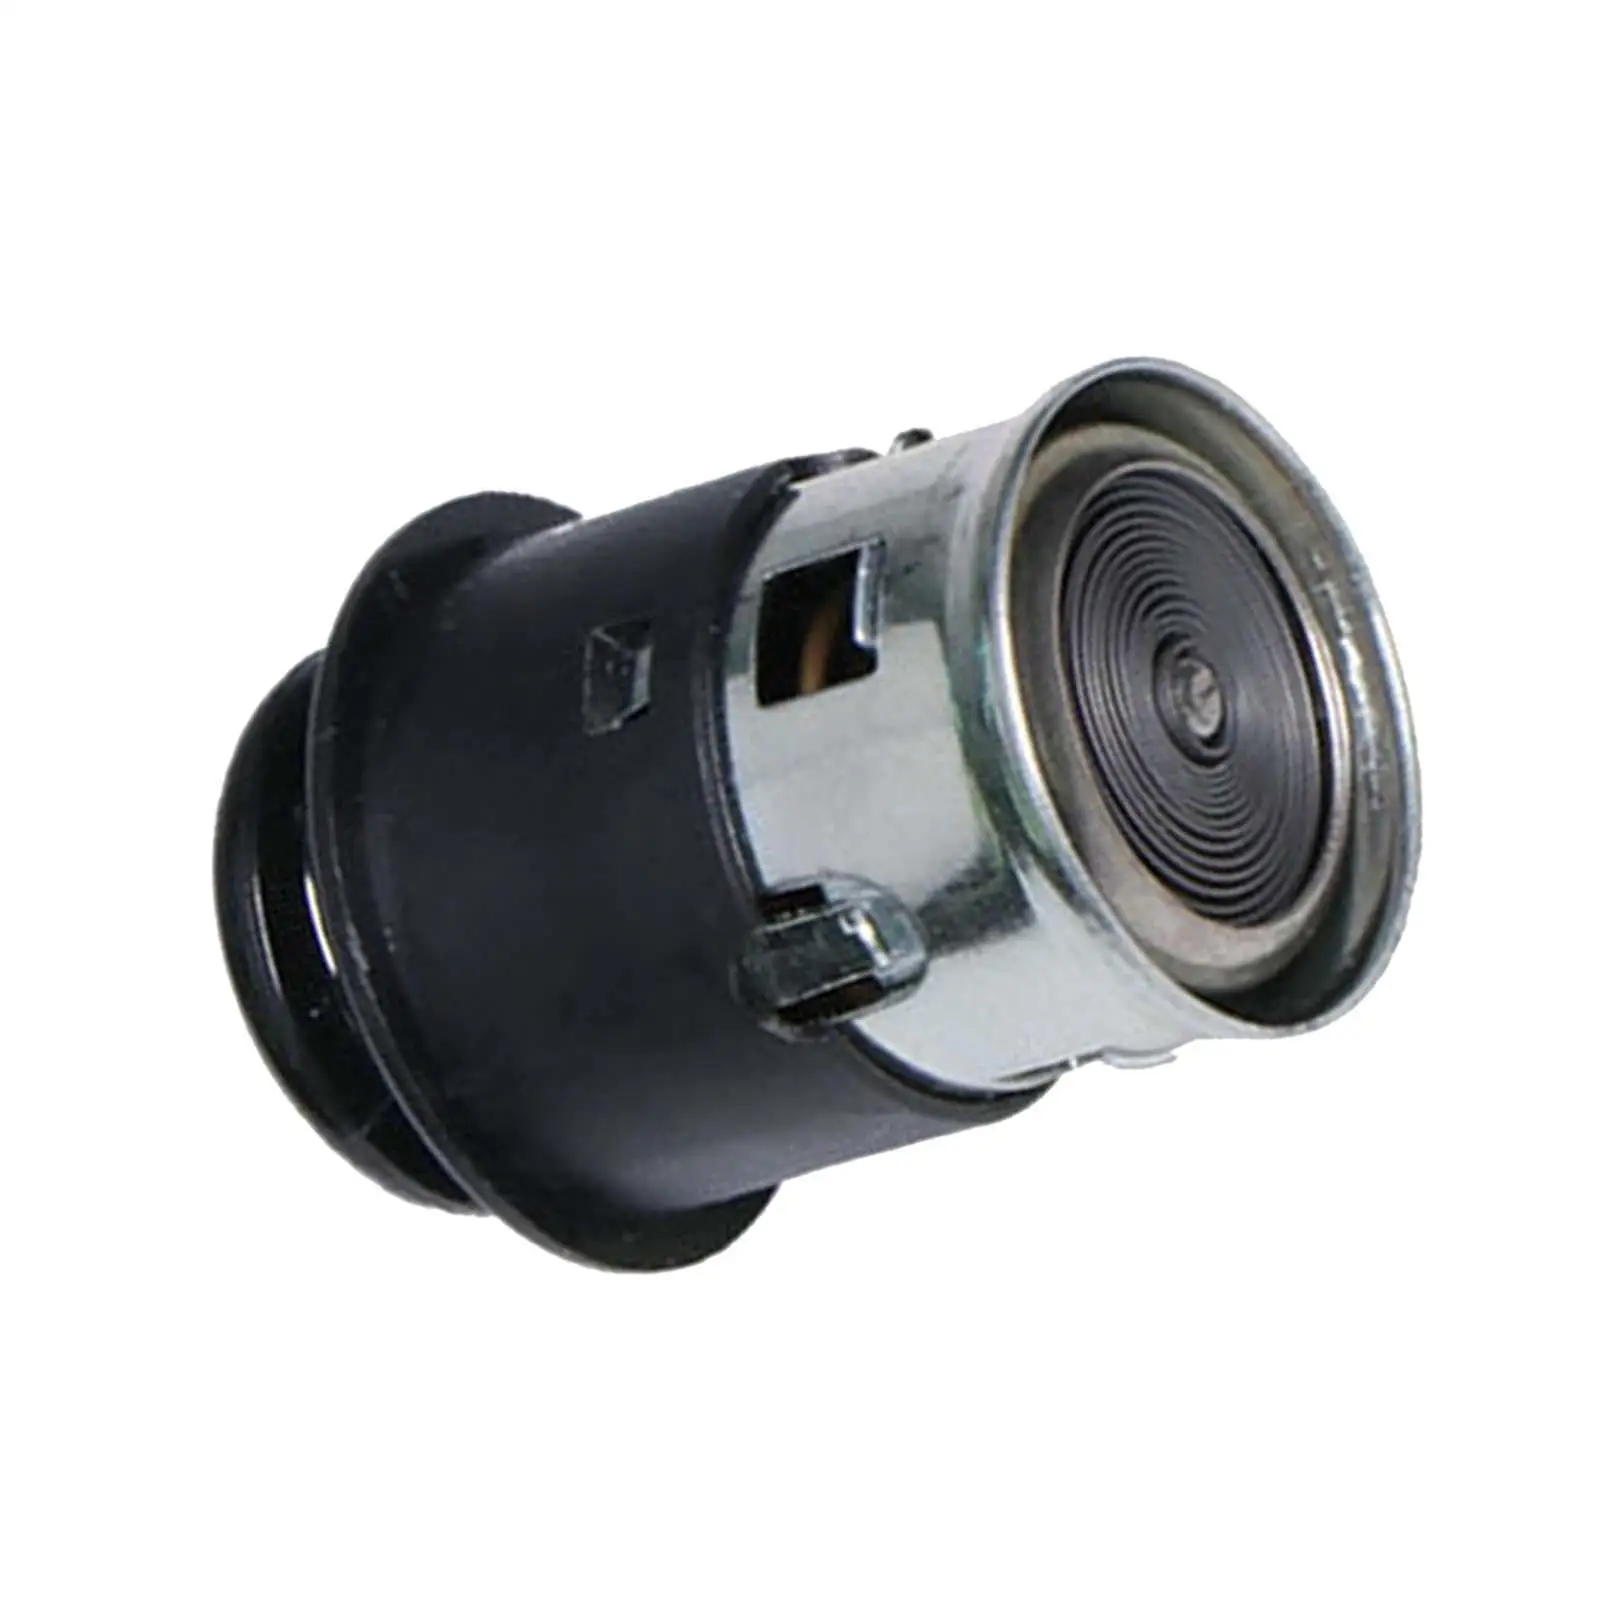 Power Outlet Plug Adapter for Mercedes-Benz C Class GLK Class ml Class